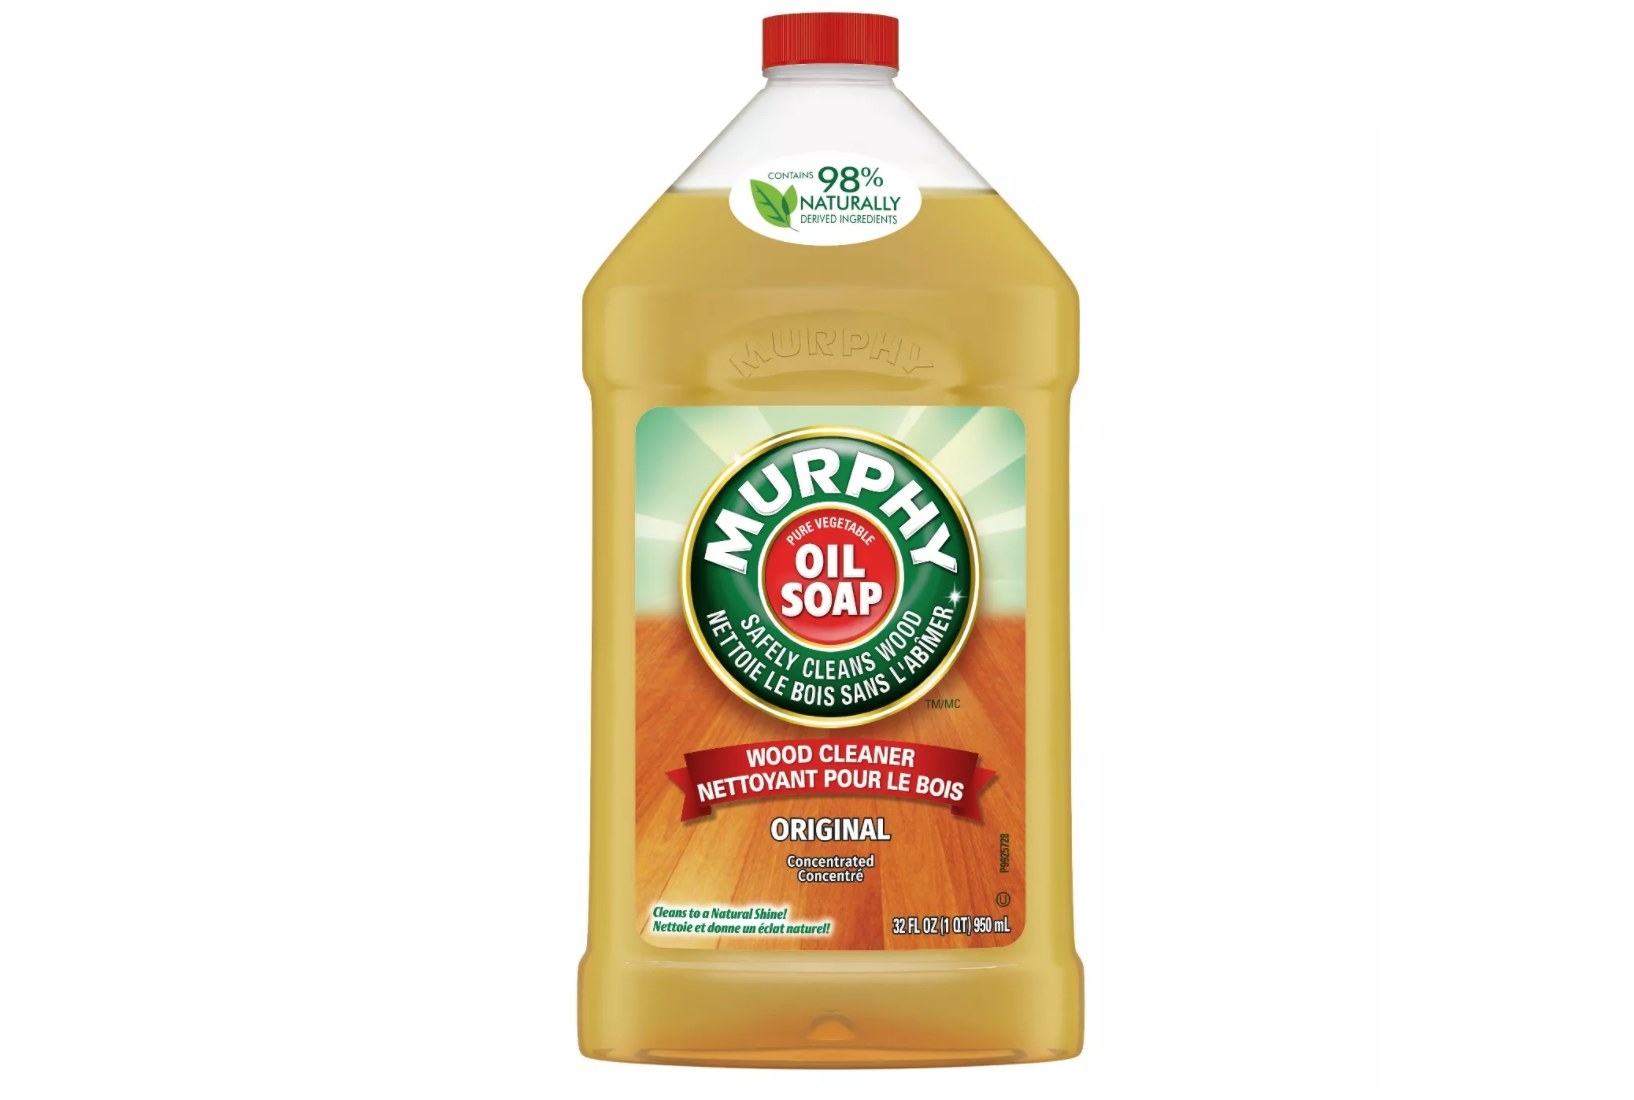 A bottle of oil soap 